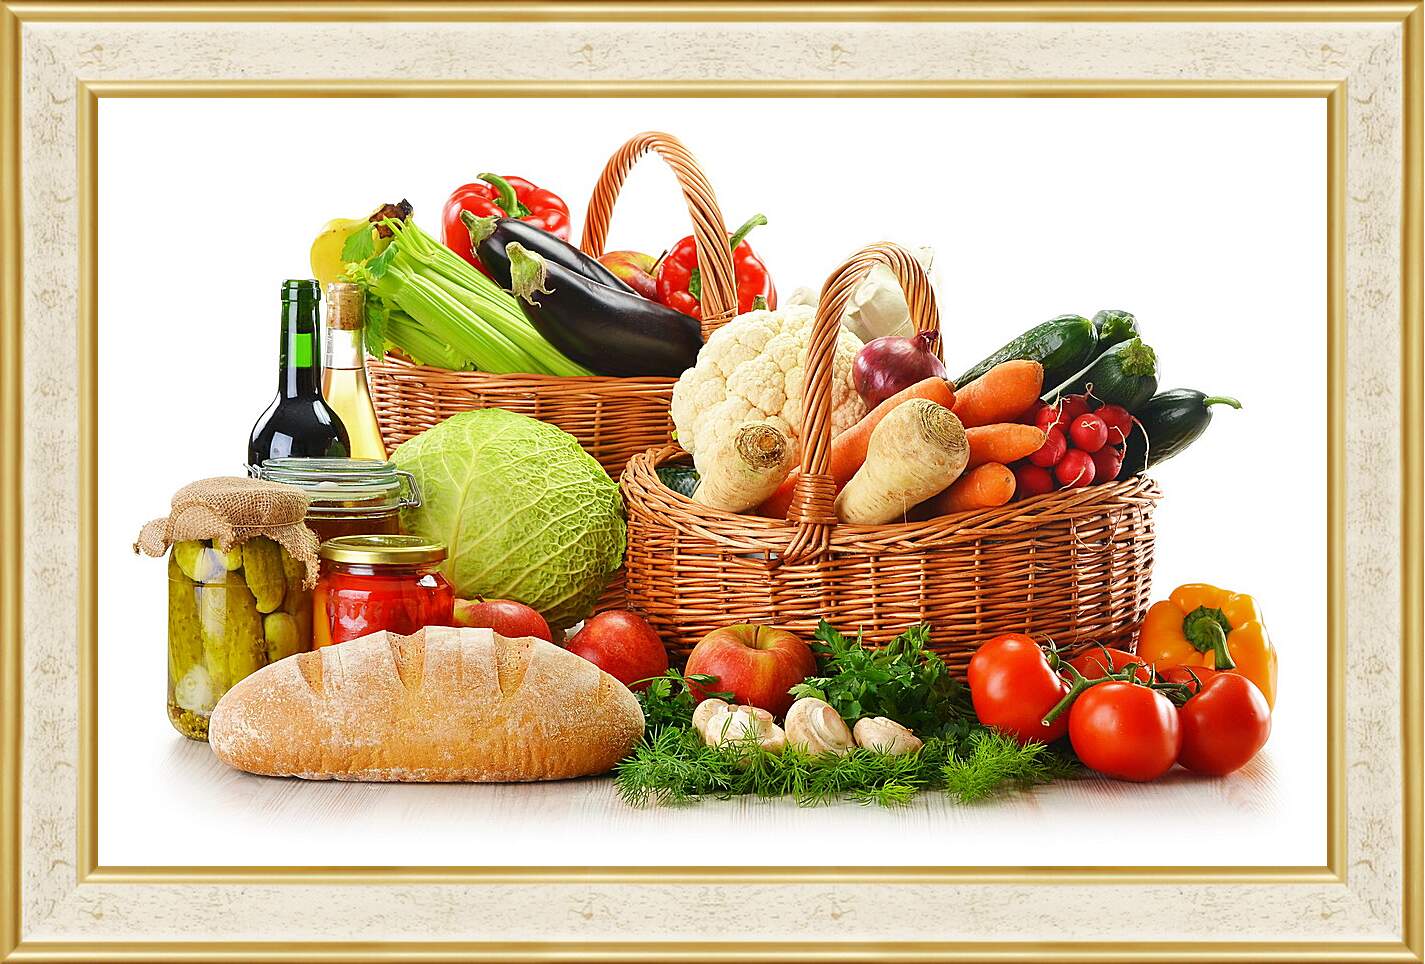 Картина в раме - Бутылка вина, хлеб и две корзины овощей и фруктов